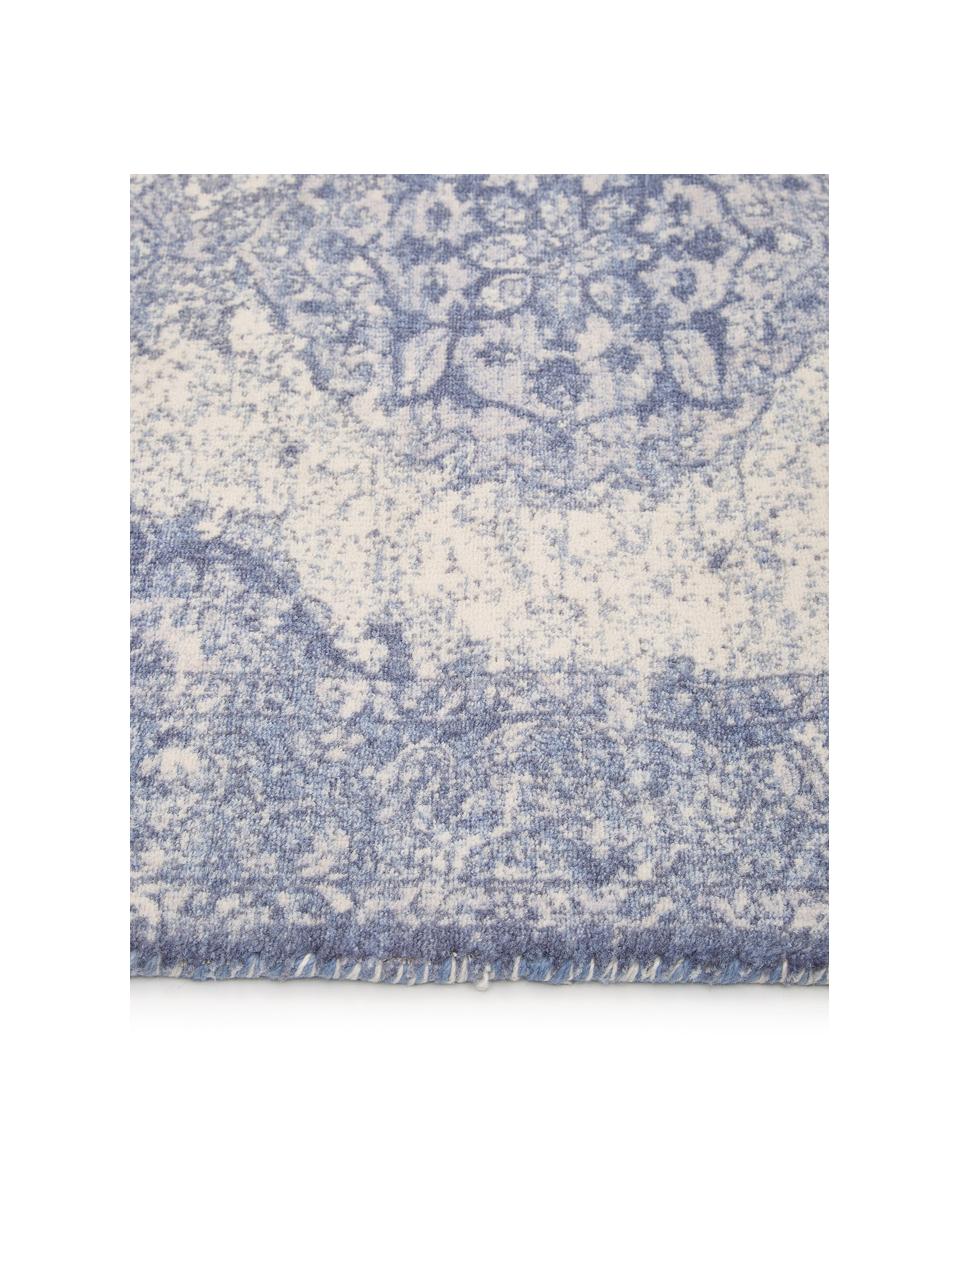 Vloerkleed Elegant in vintage stijl, Bovenzijde: 100% nylon, Onderzijde: 100% katoen, Blauw, B 160 x L 230 cm (maat M)